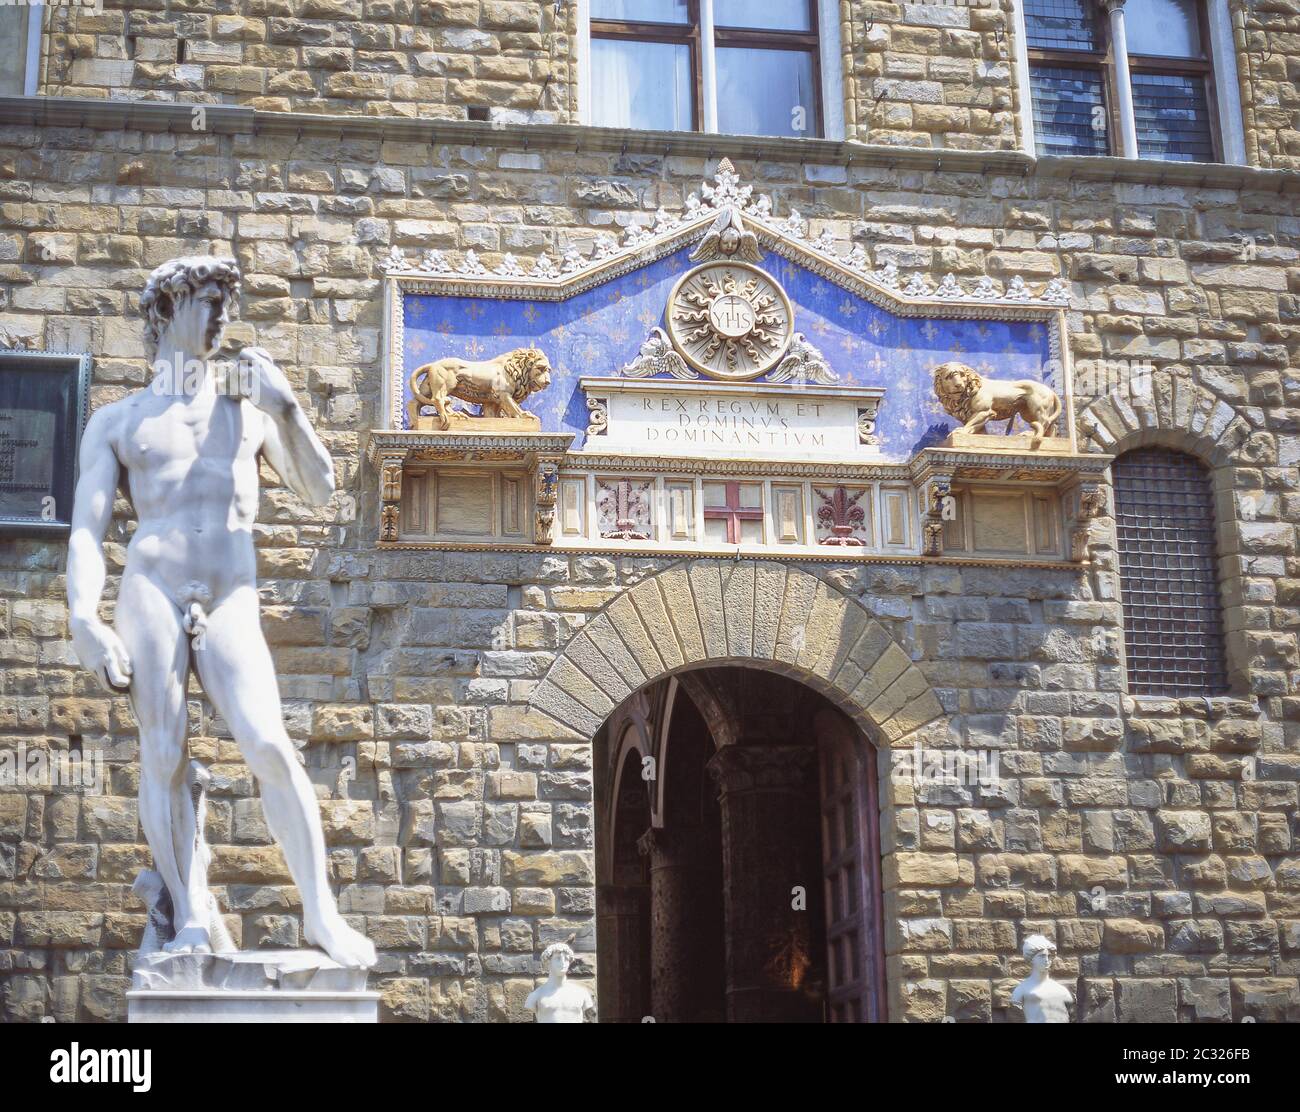 Statue of David at entrance to Palazzo Vecchio, Piazza della Signoria, Florence (Firenze), Tuscany Region, Italy Stock Photo